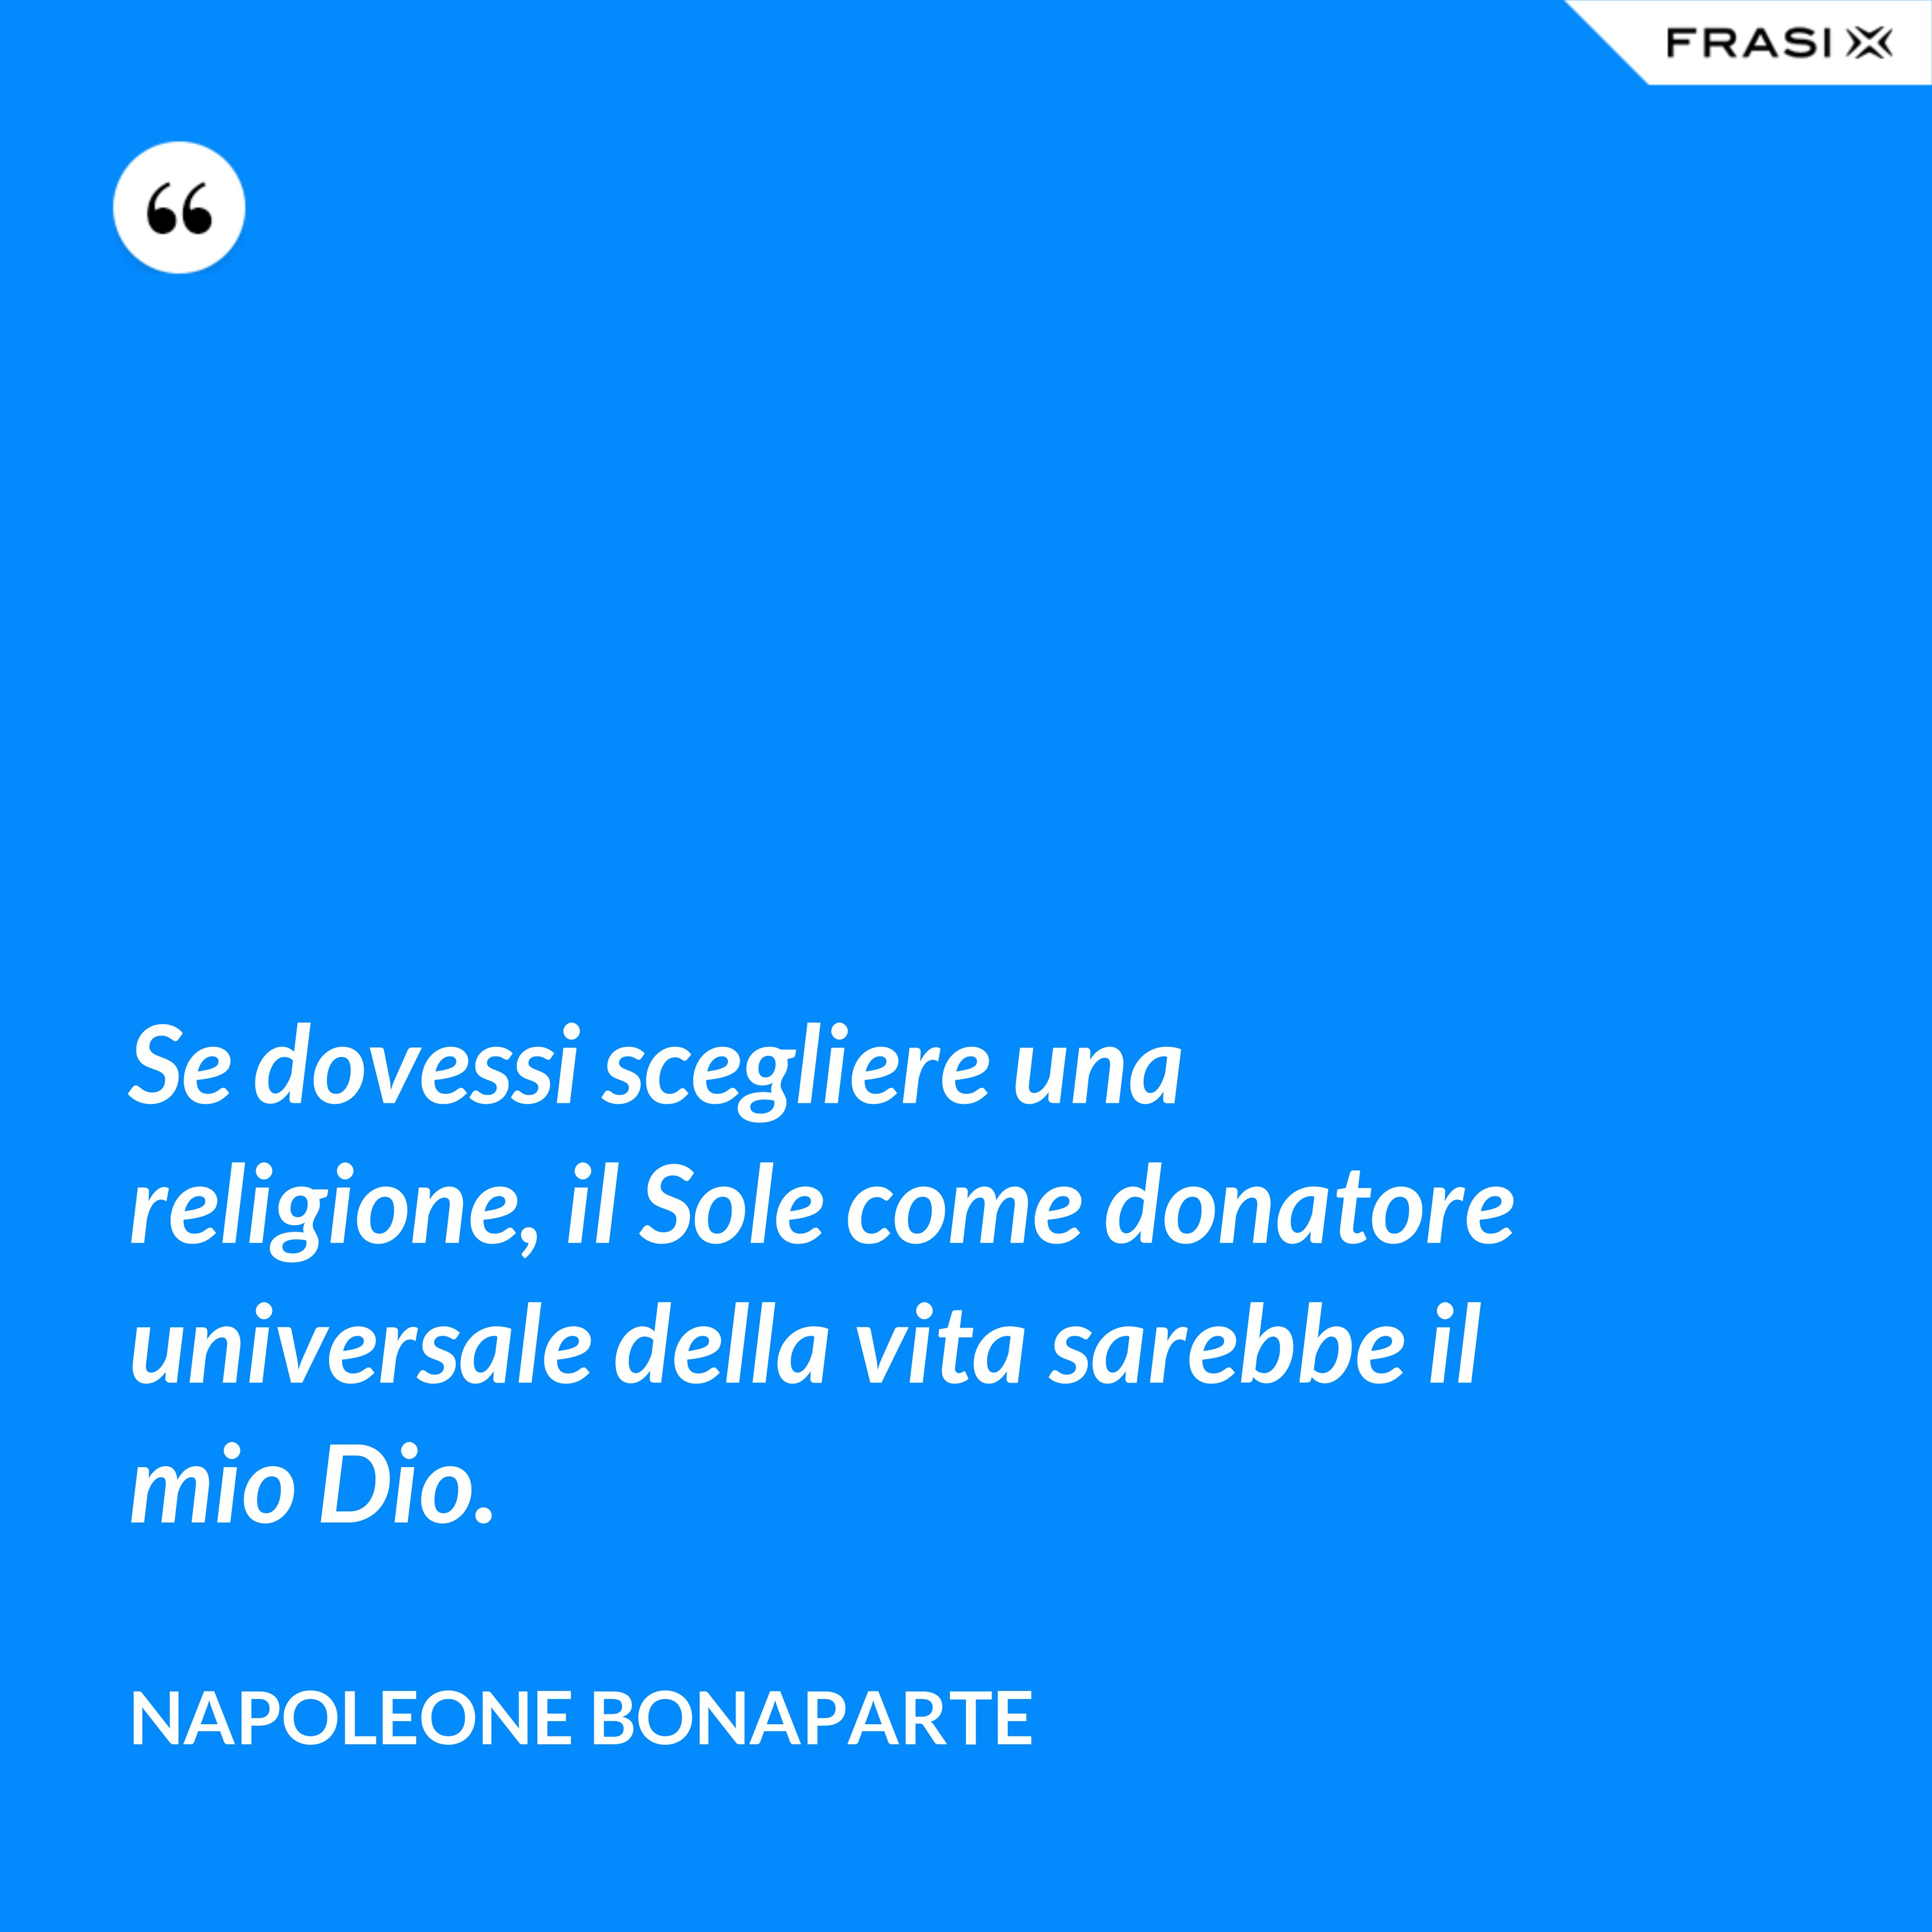 Se dovessi scegliere una religione, il Sole come donatore universale della vita sarebbe il mio Dio. - Napoleone Bonaparte